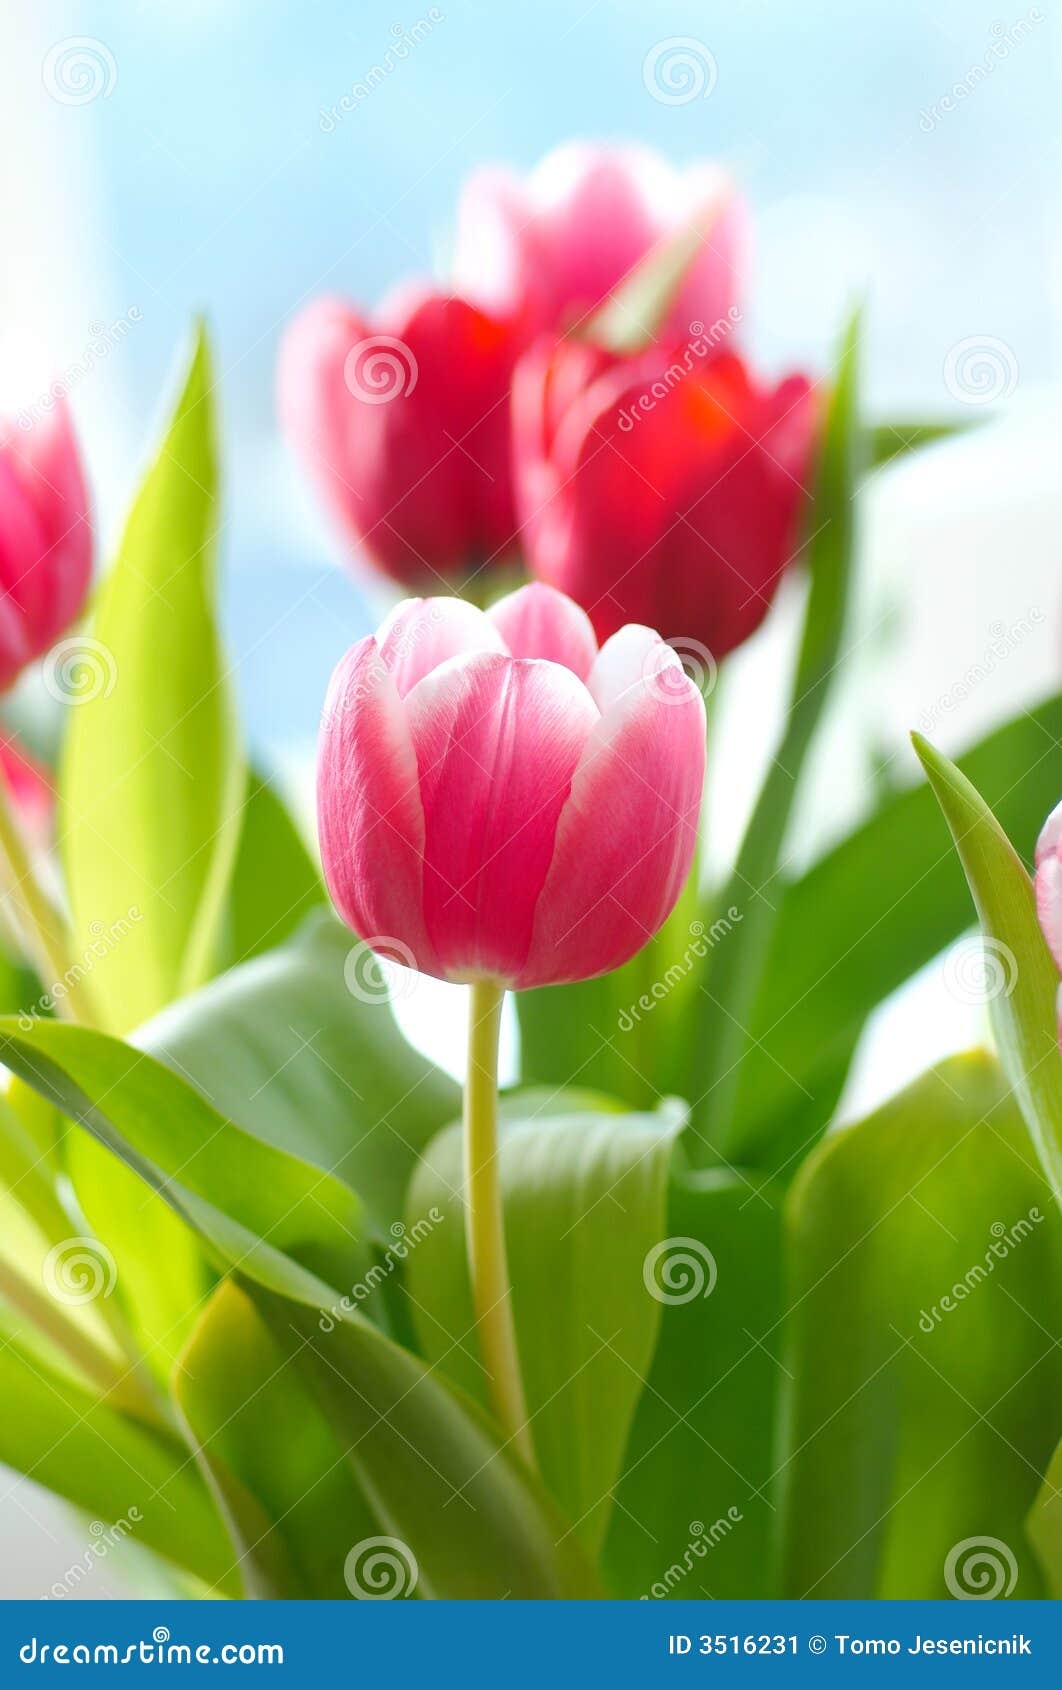 bunch of tulip flowers